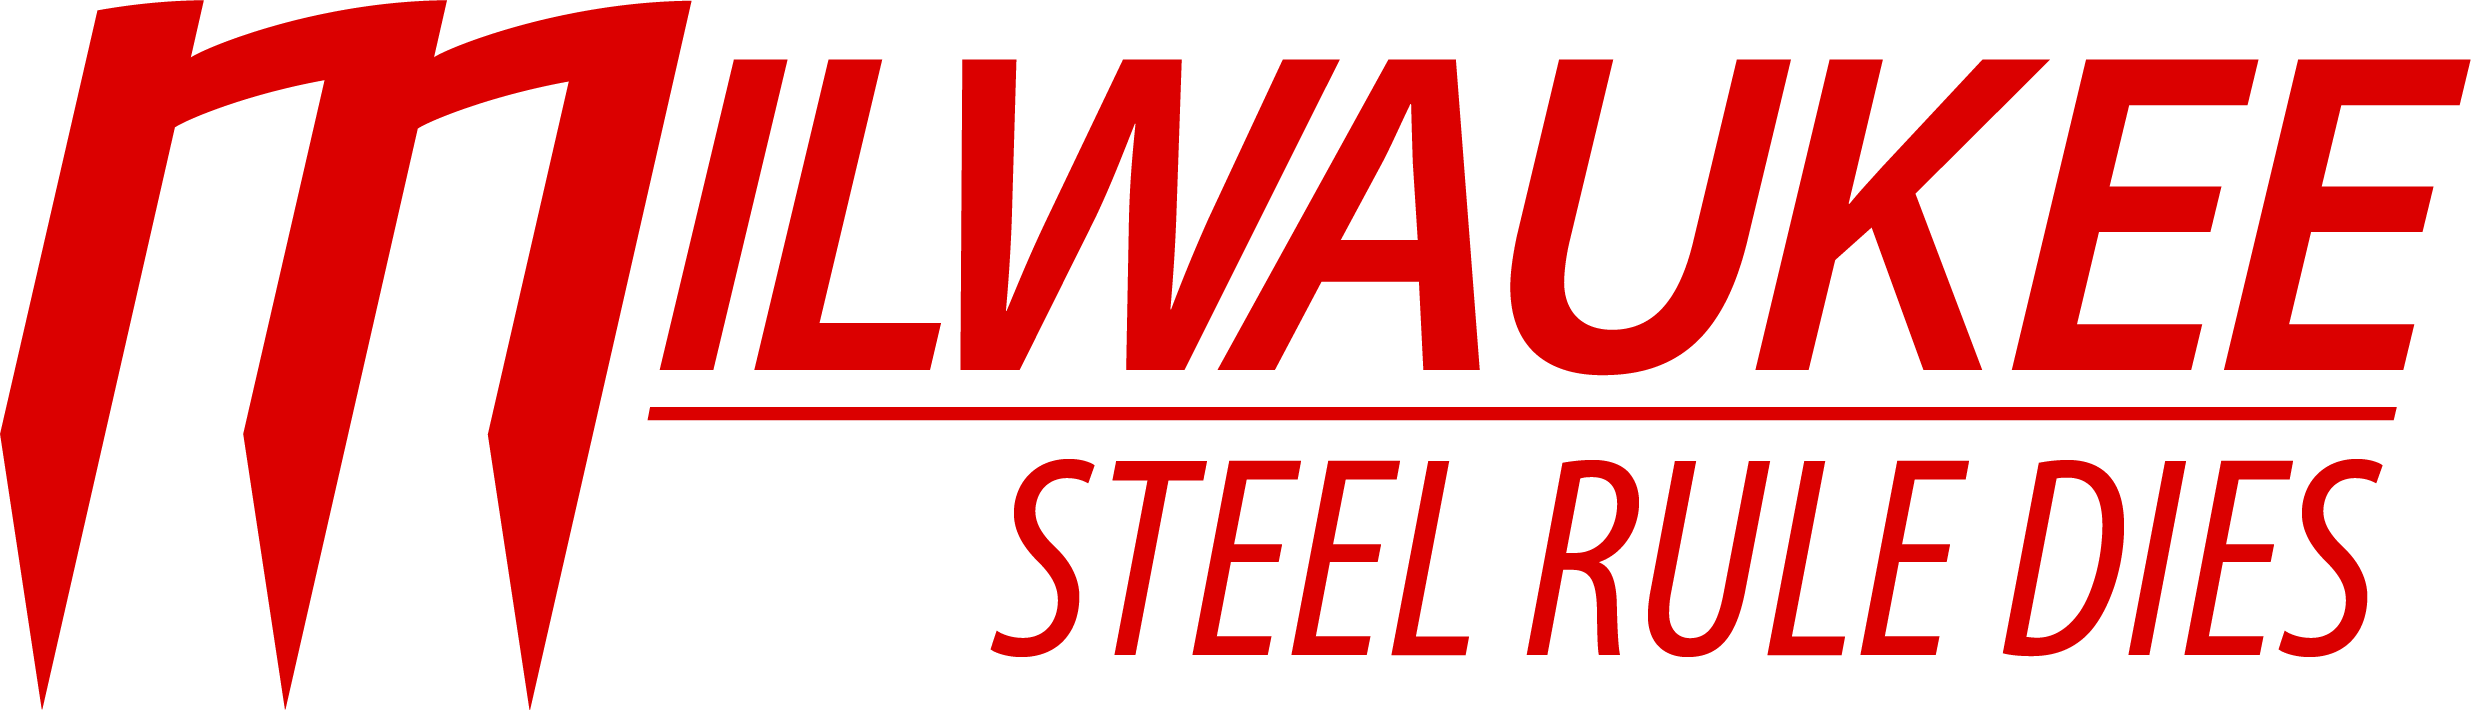 Milwaukee Steel Rule Dies